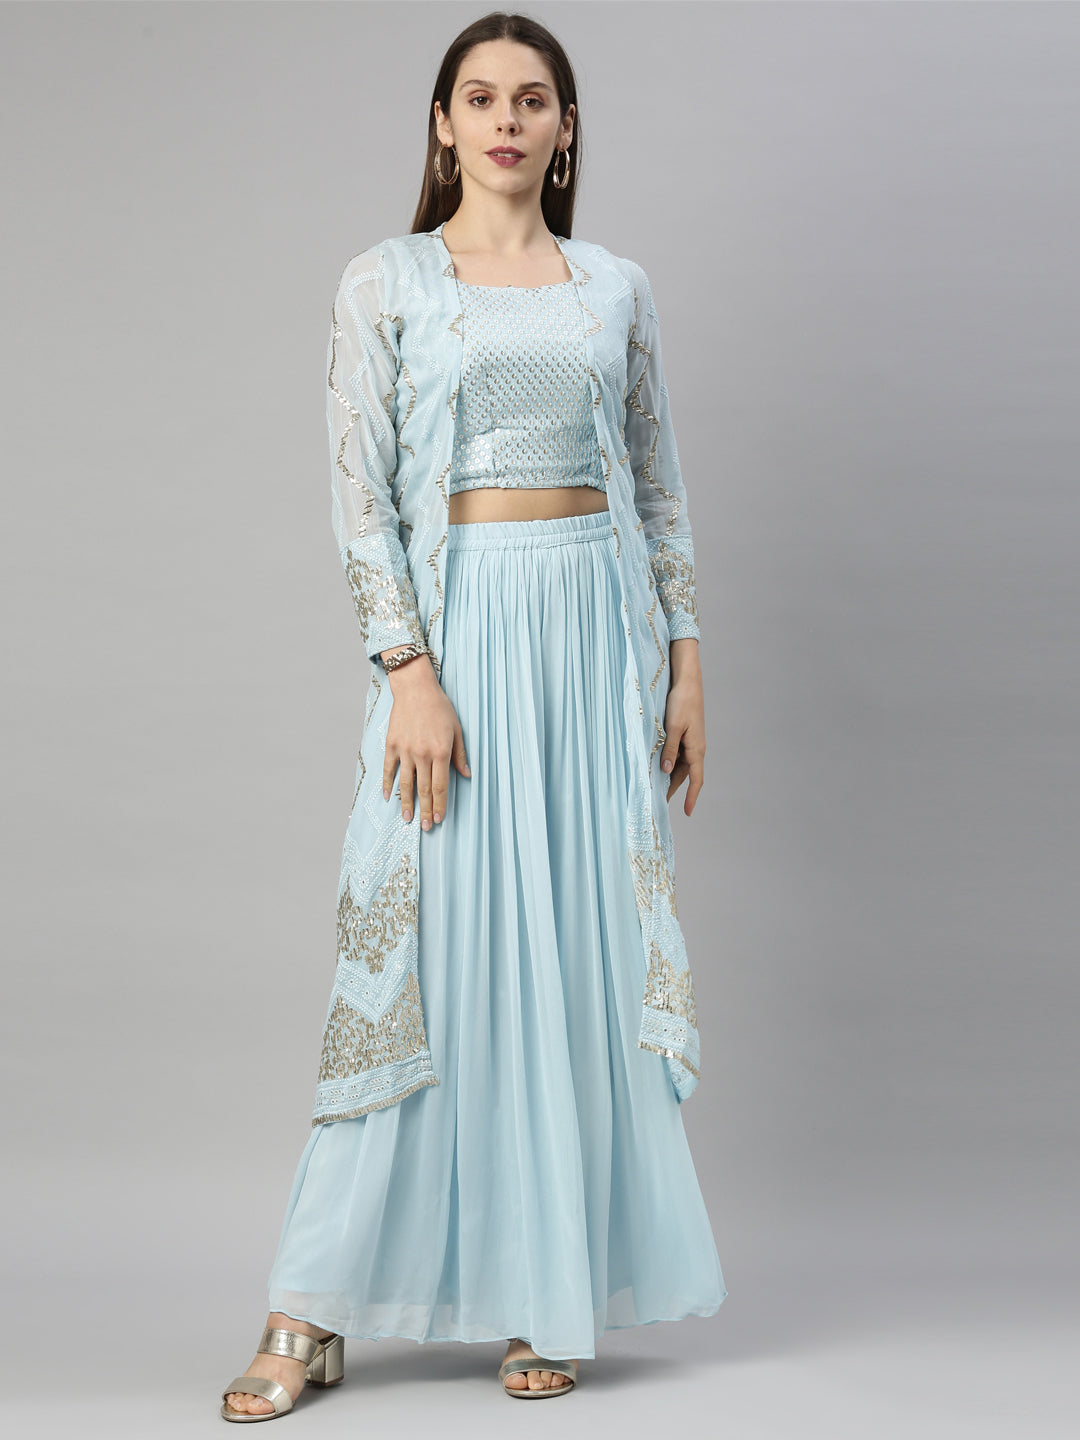 Neeru's Sky Blue Color Georgette Fabric Suit-Fusion